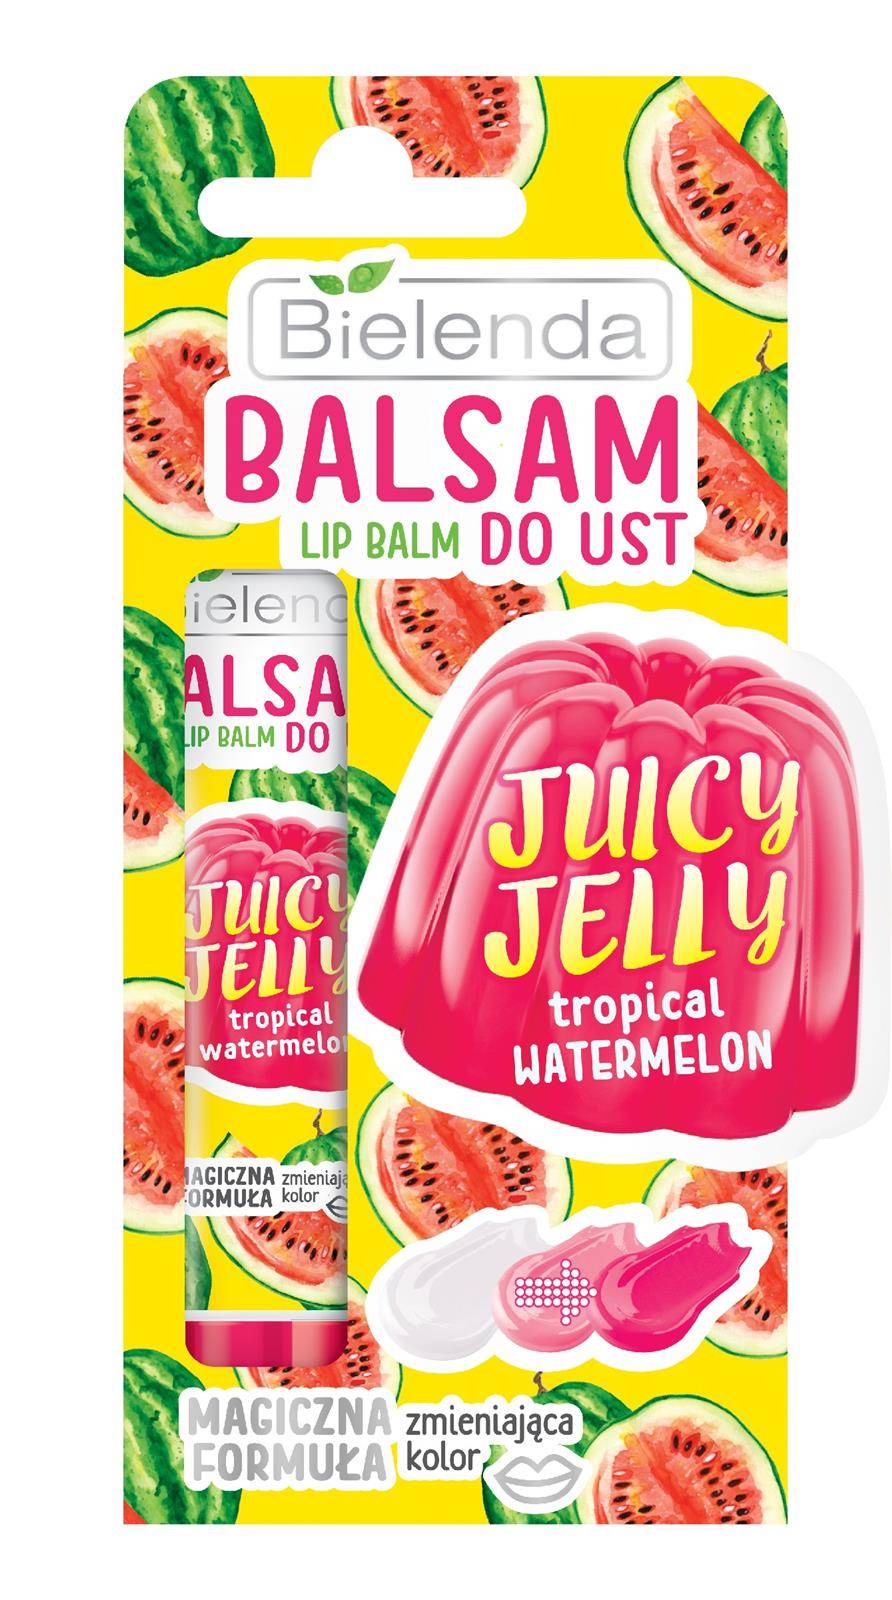 Bielenda Juicy Jelly Lip Balm balsam do ust zmieniający kolor Tropical Watermelon 10g